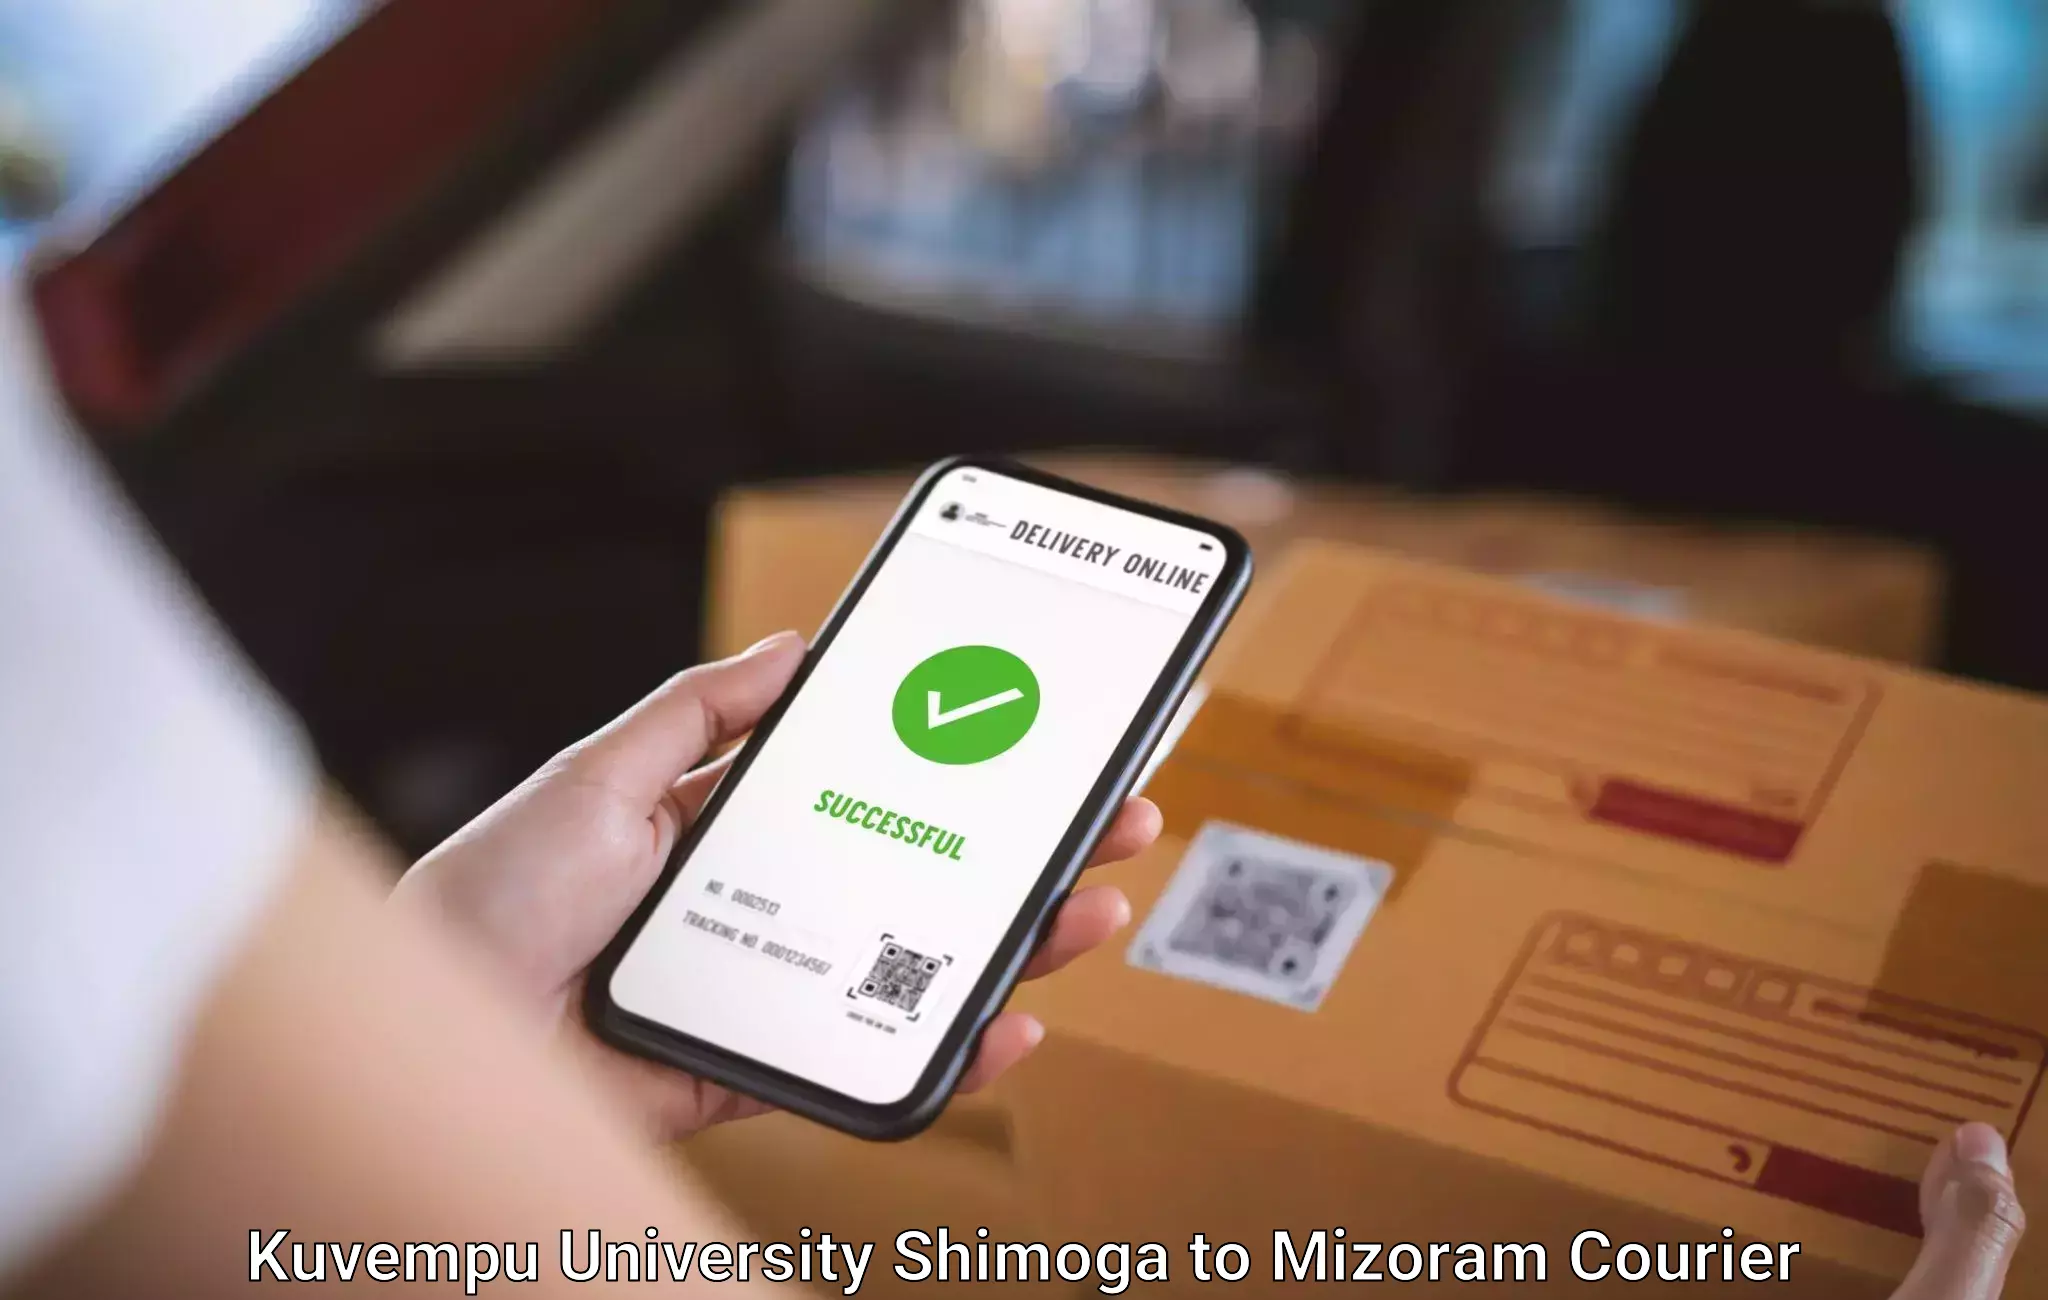 Door-to-door baggage service Kuvempu University Shimoga to Mizoram